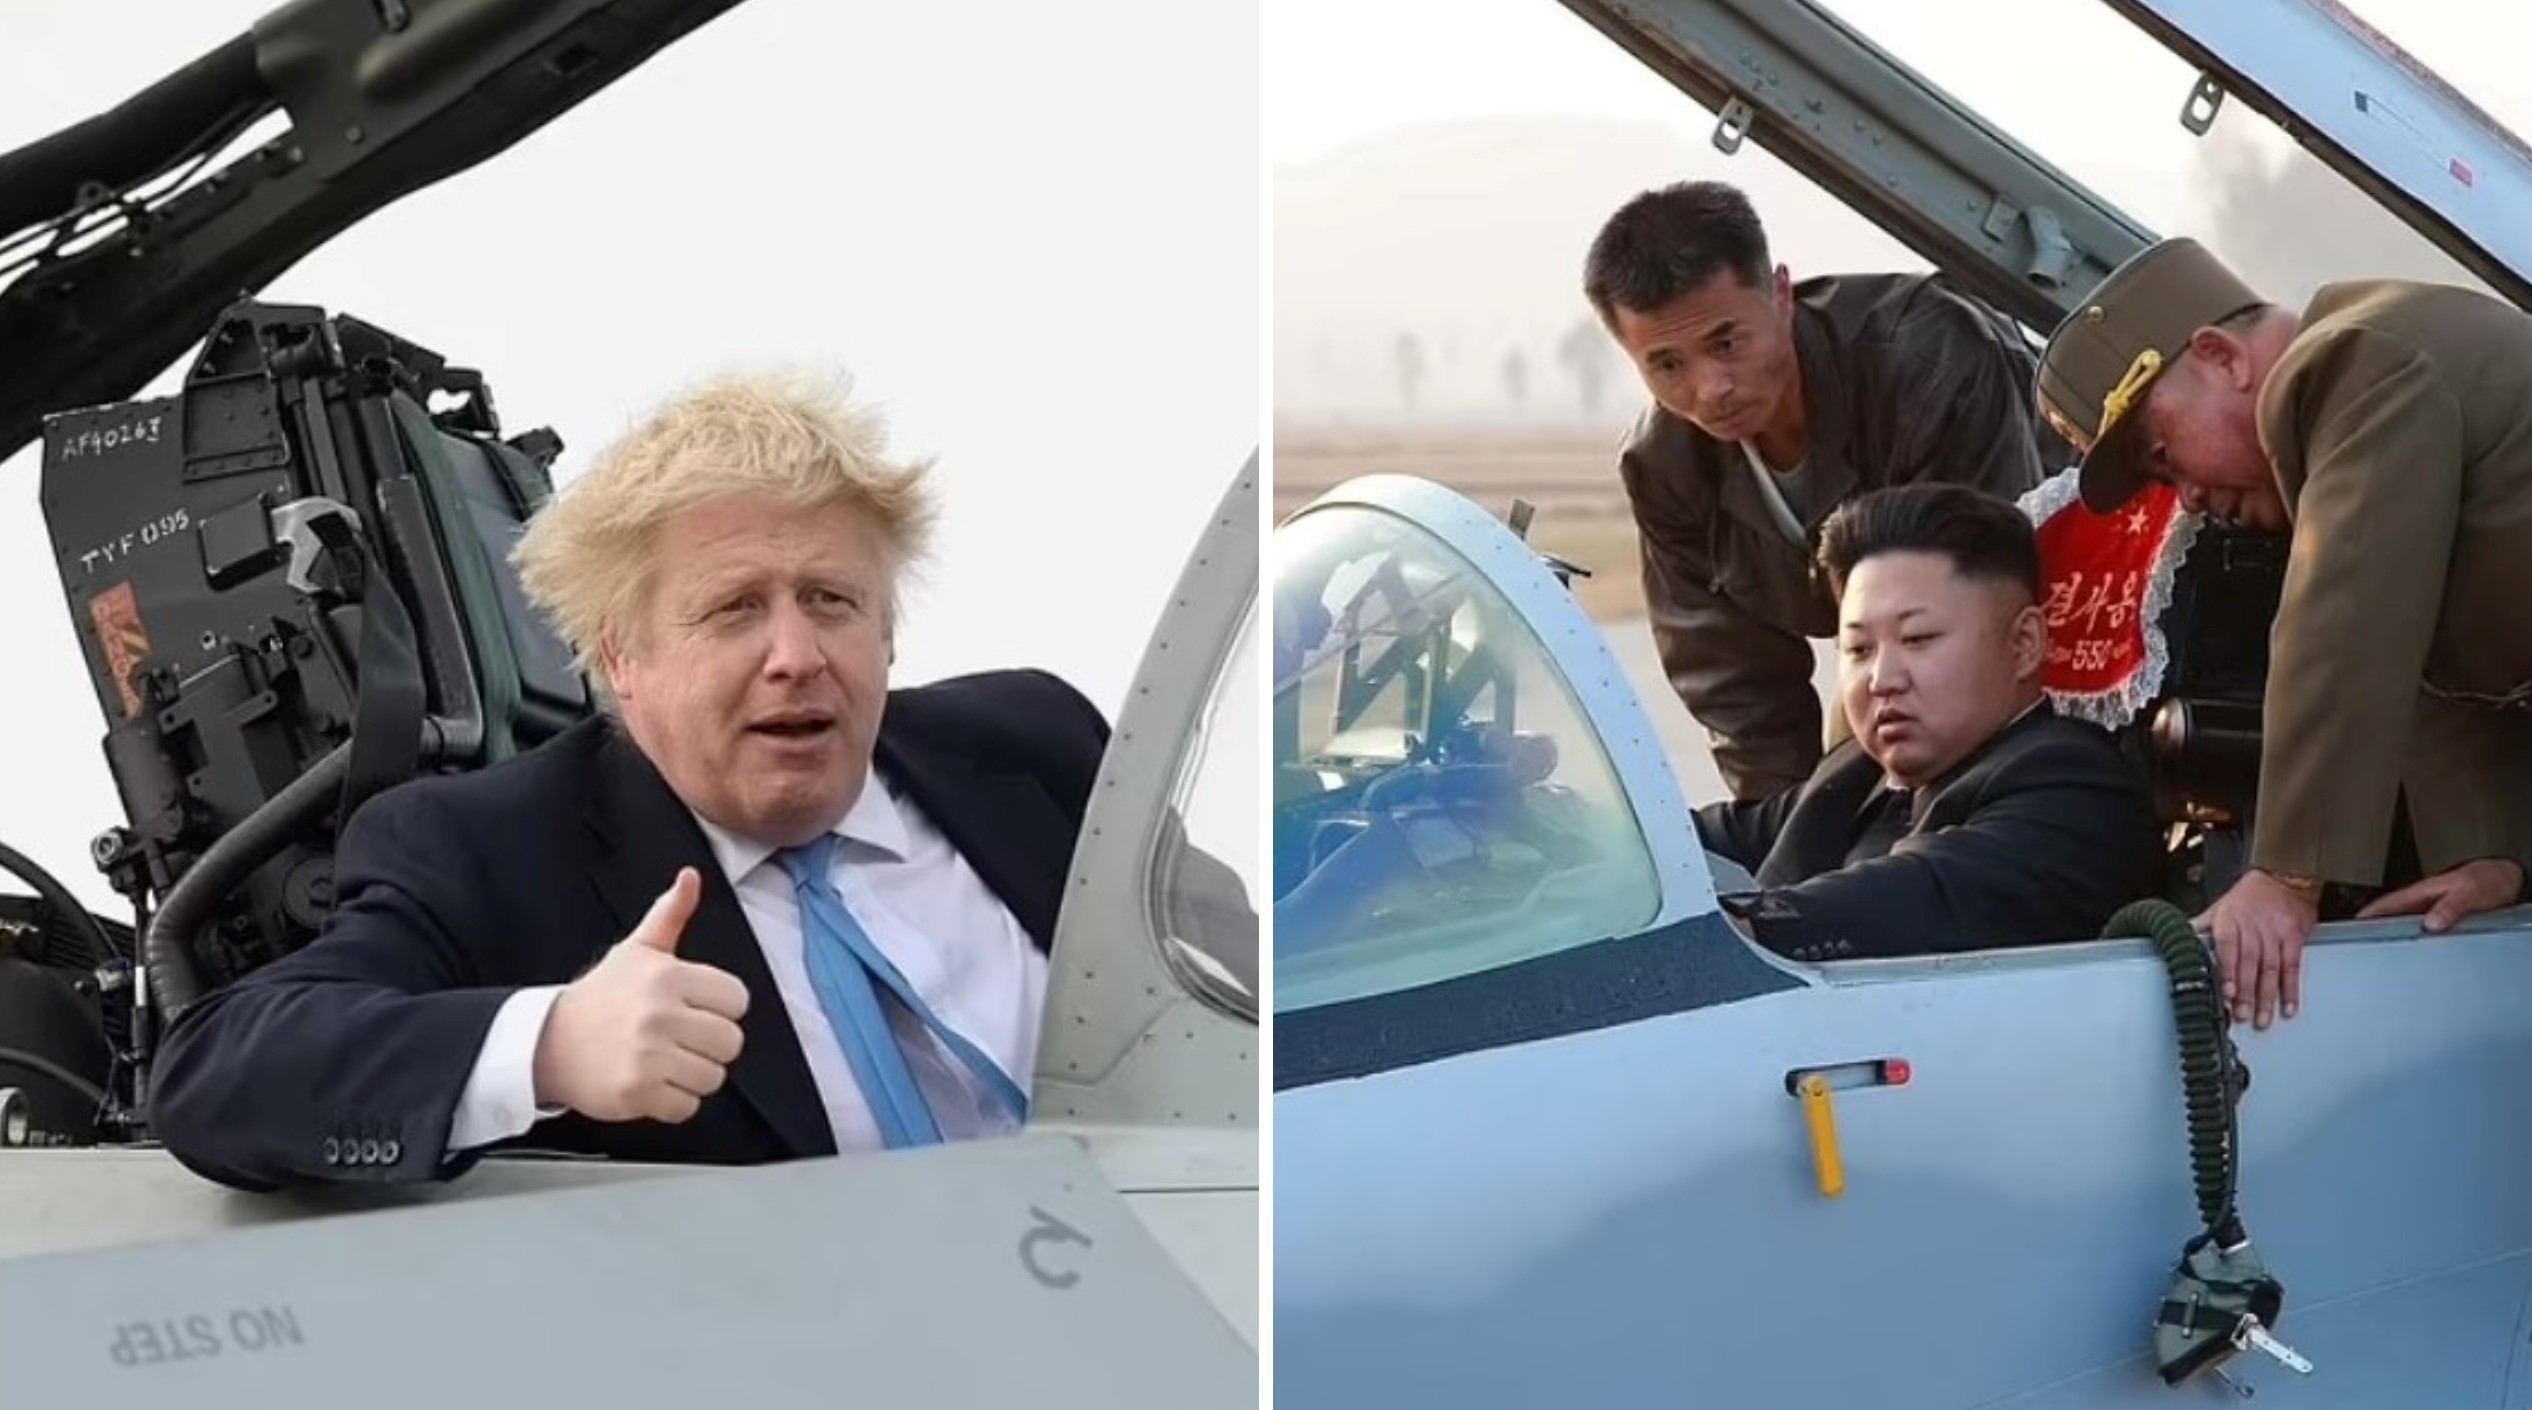 Борис Джонсон и Ким Чен Ын: журналисты нашли забавное сходство фотосюжетов двух политиков